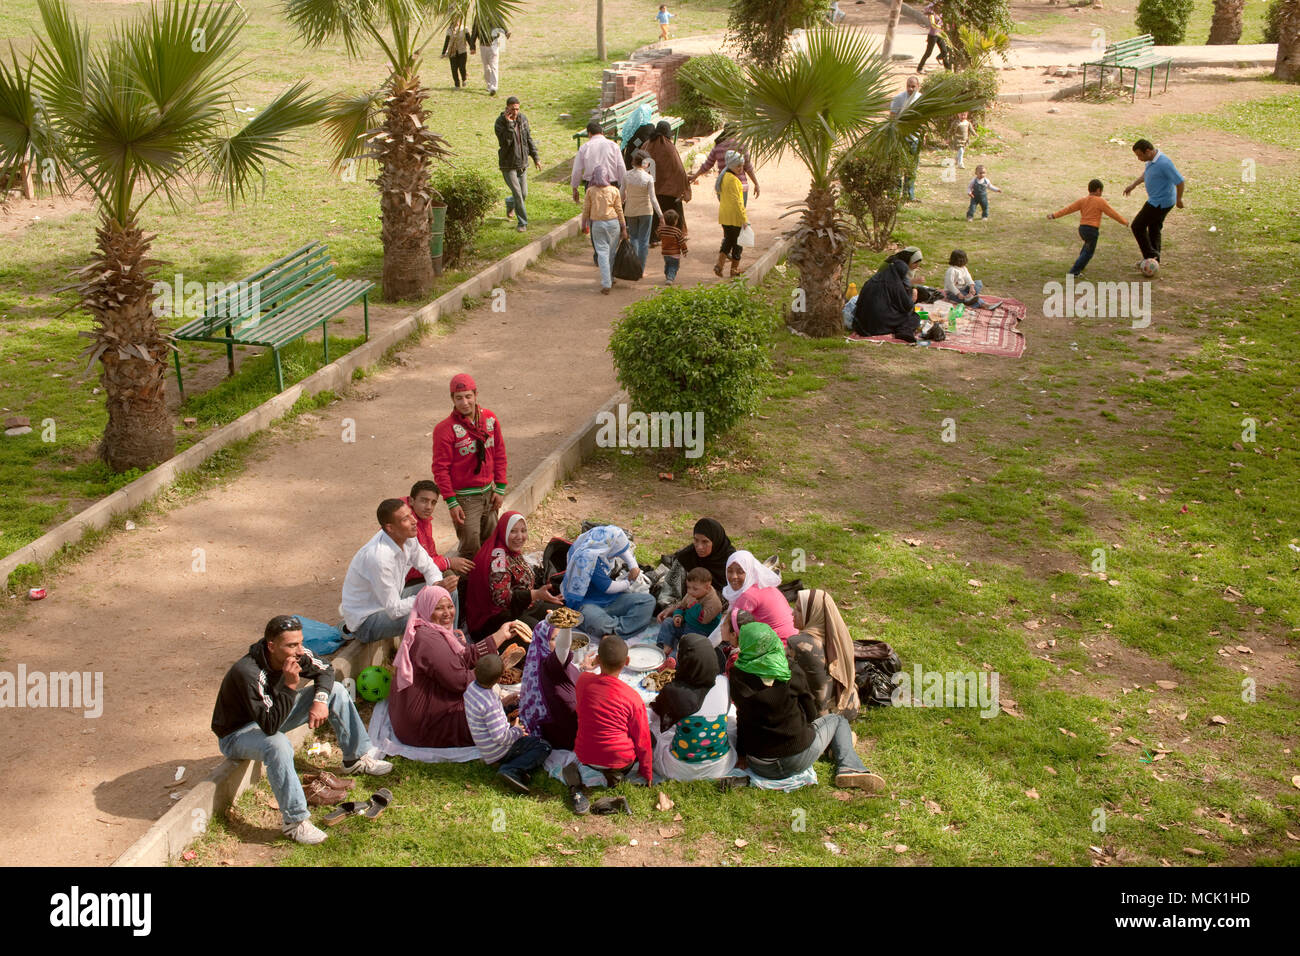 Aegypten ha, Kairo, Qanater (Kanater) opere di arginatura du nullo, besonders am Wochenende ein beliebtes Ausflugsziel, Familieeim Picknick Foto Stock